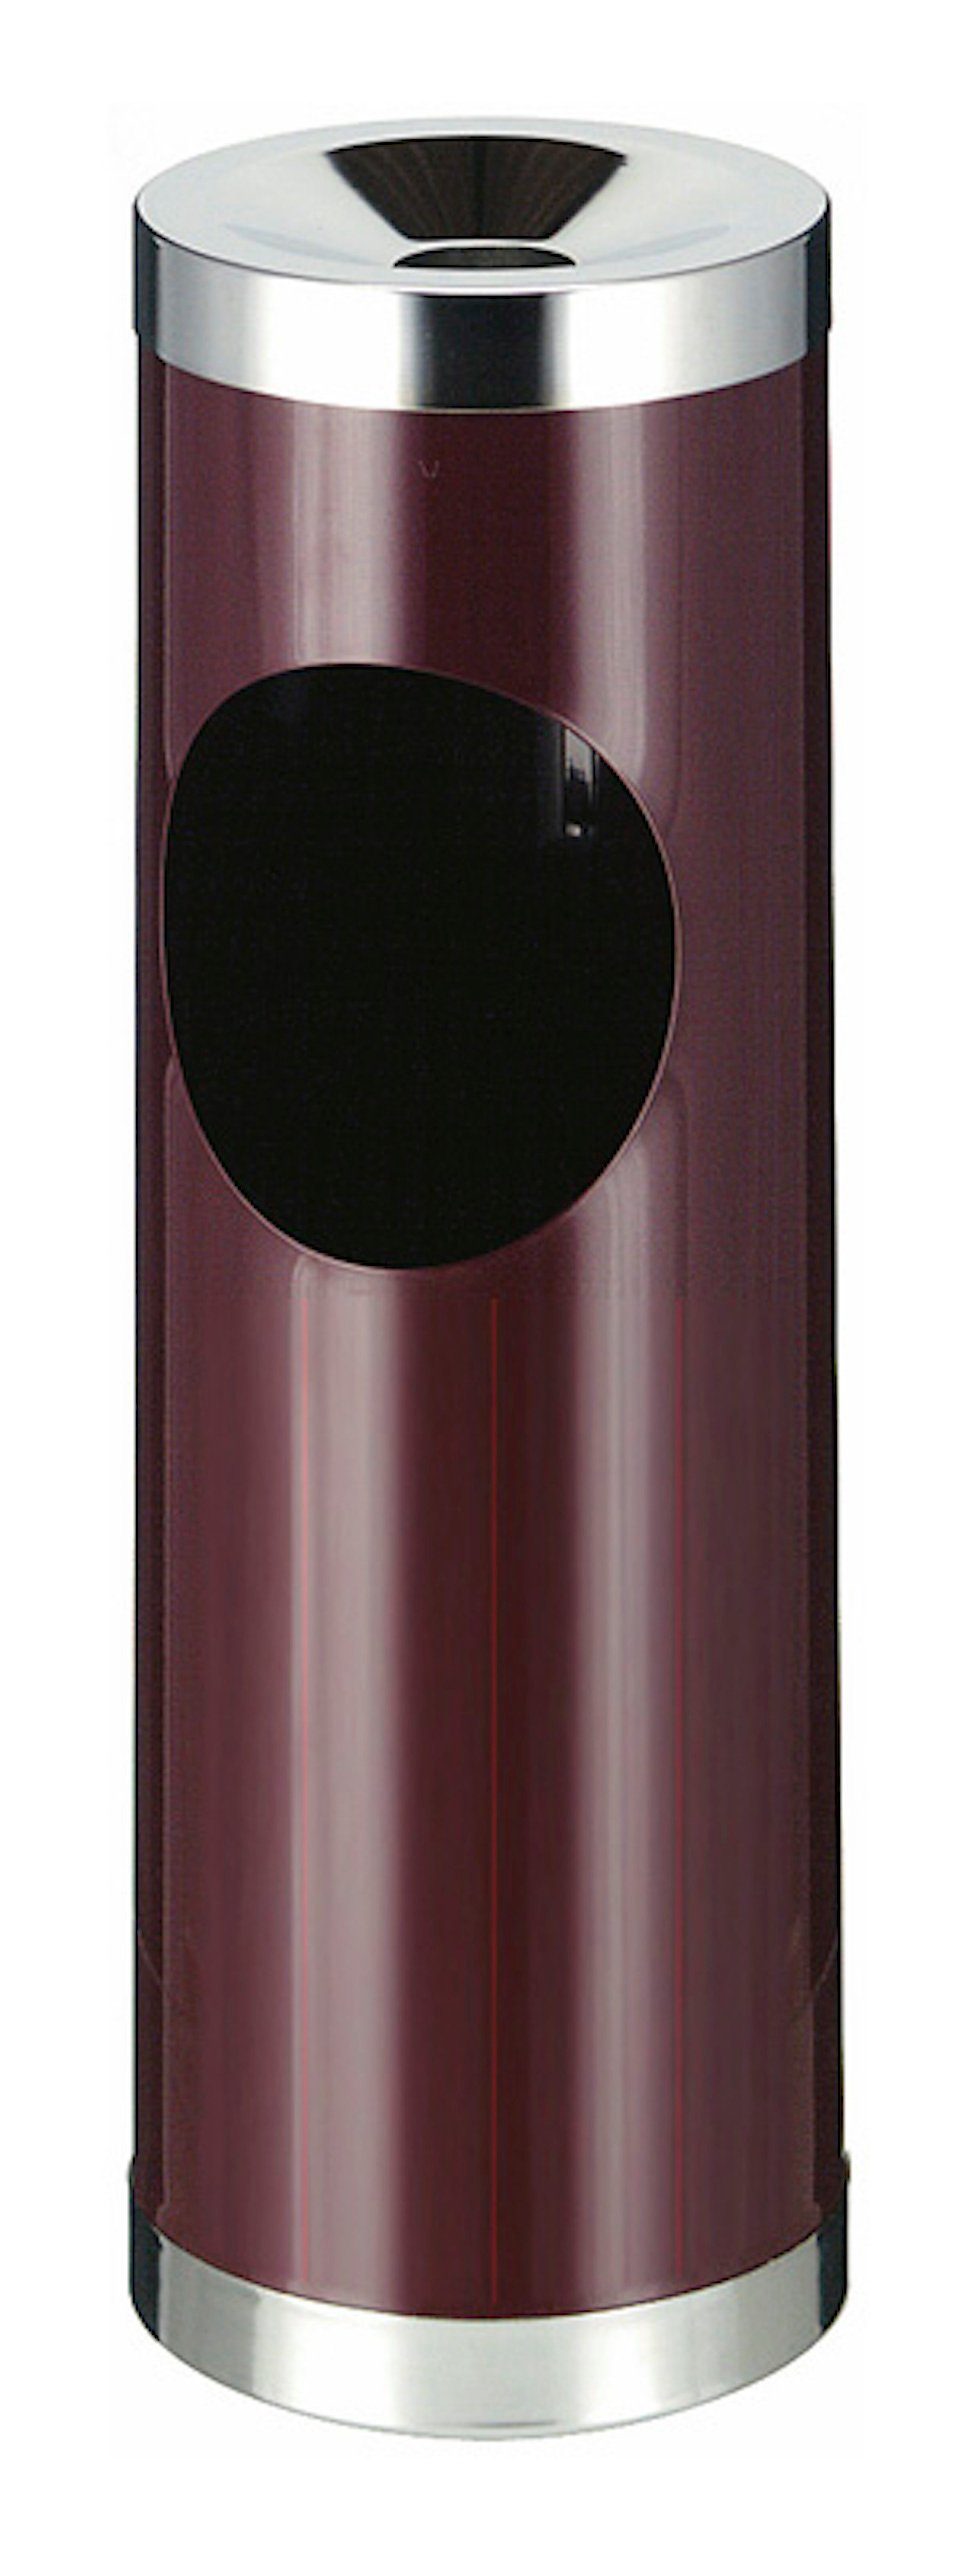 PROREGAL® Aschenbecher Runder Metall Kombiascher mit ovaler Einwurfsöffnung, 30L, Grau Bordeaux | Aschenbecher